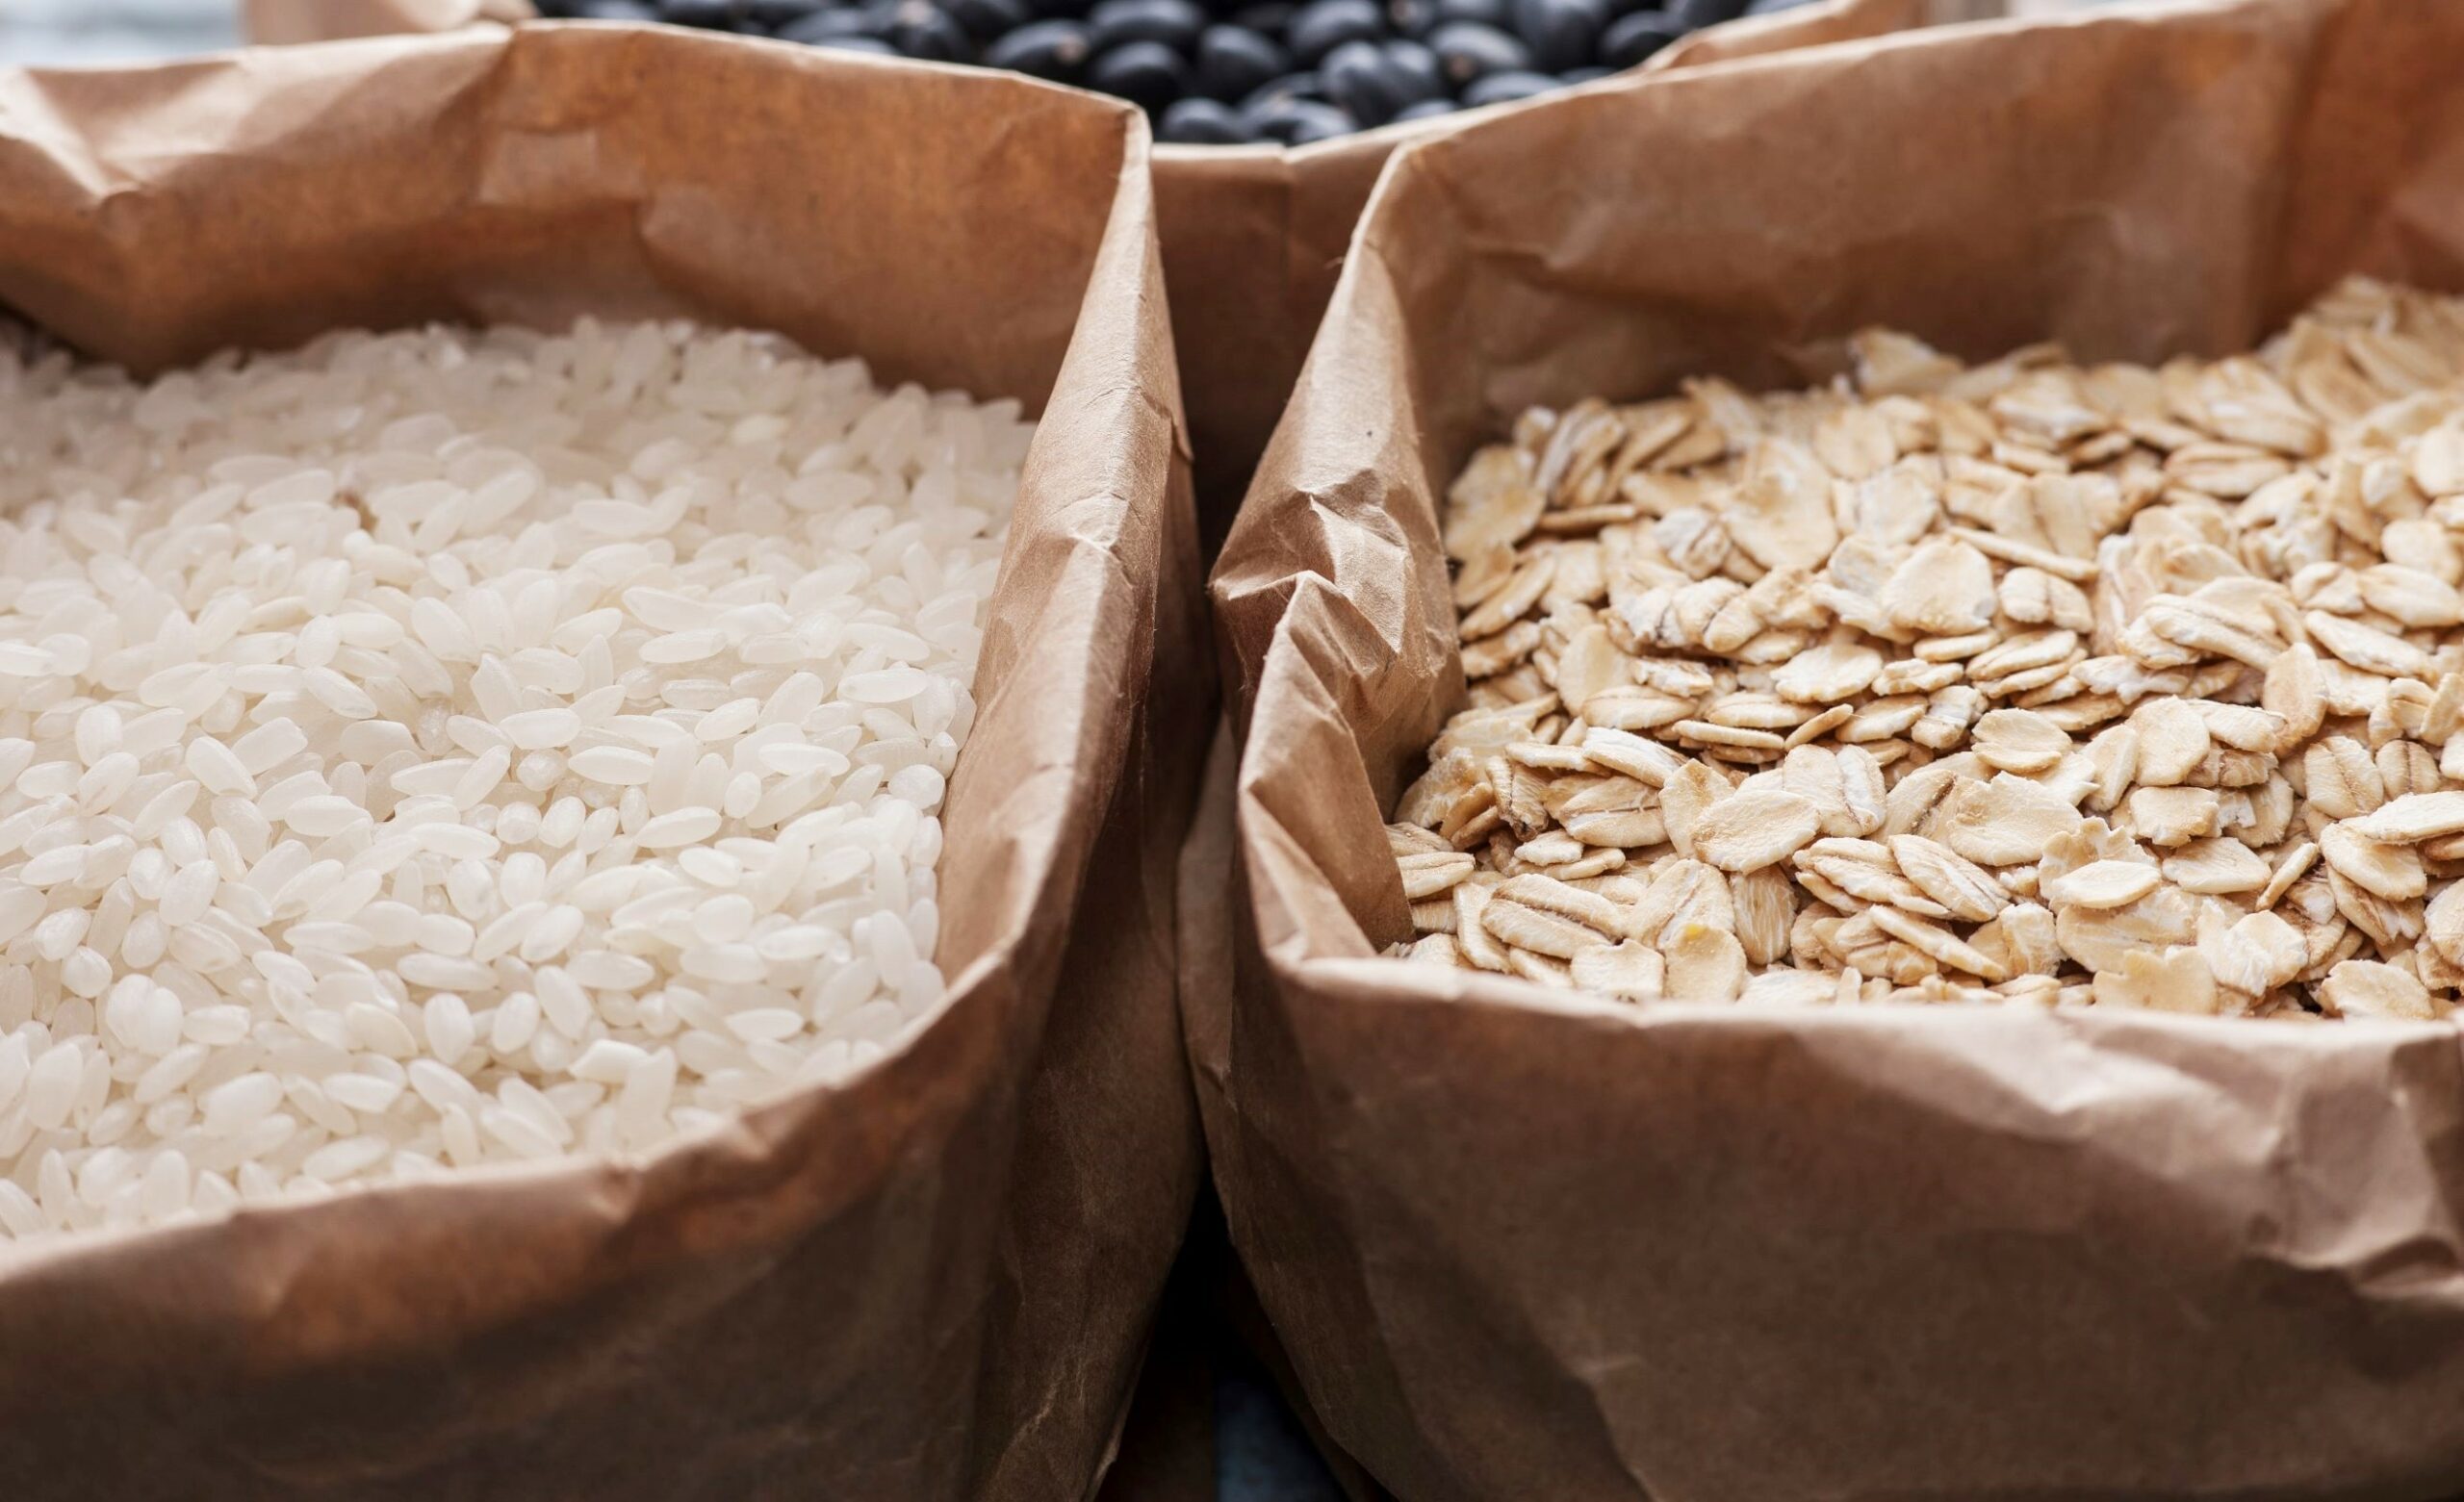 Muskelaufbau: Reis oder Haferflocken? 7 wichtige Unterschiede